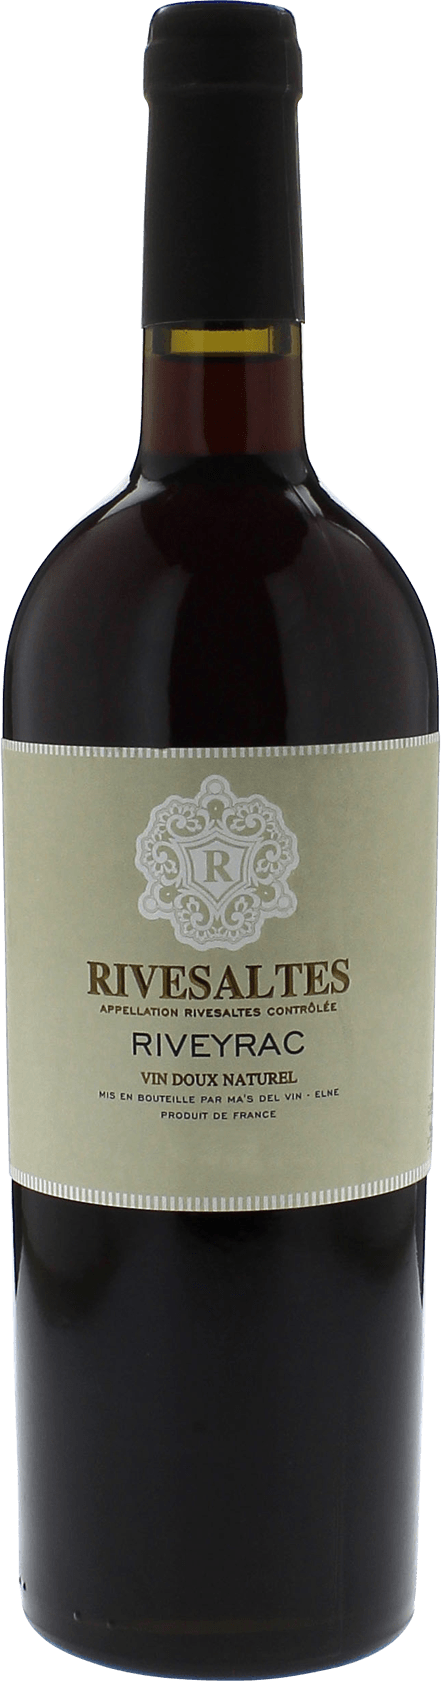 Rivesaltes riveyrac 1988 Vin doux naturel Rivesaltes, Vin doux naturel